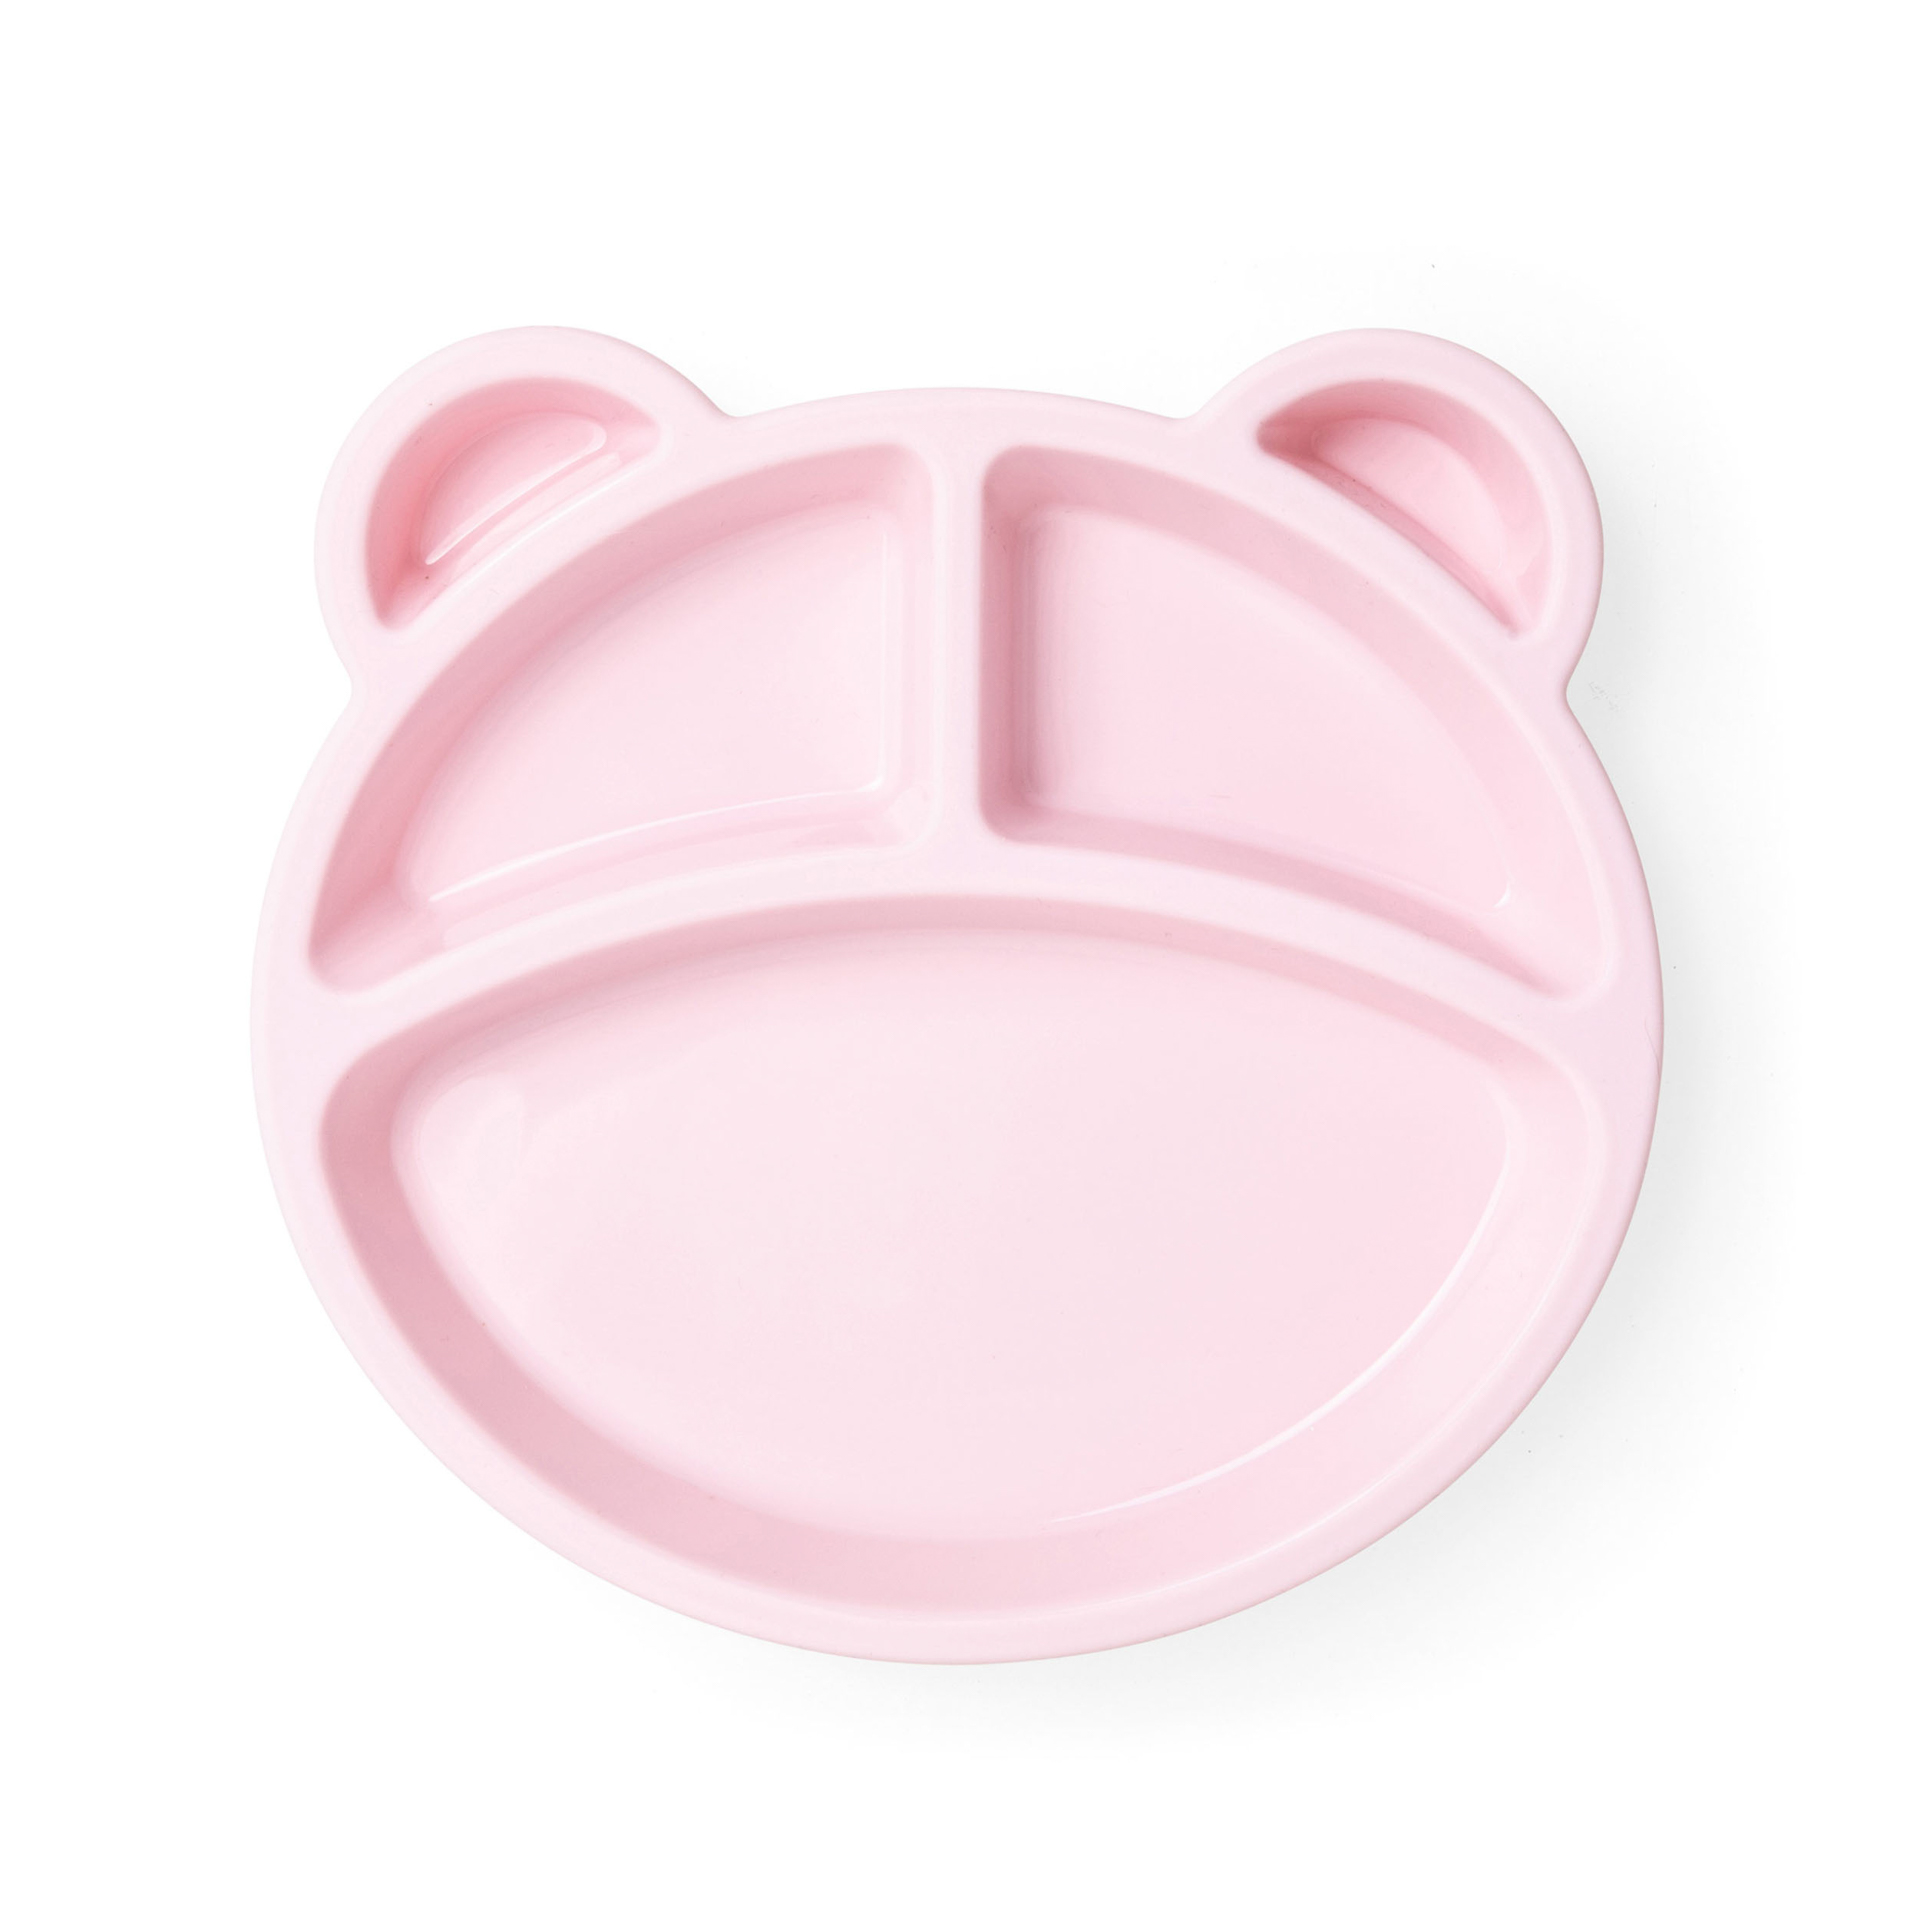 Piatto con divisori in silicone per bambini, colore rosa